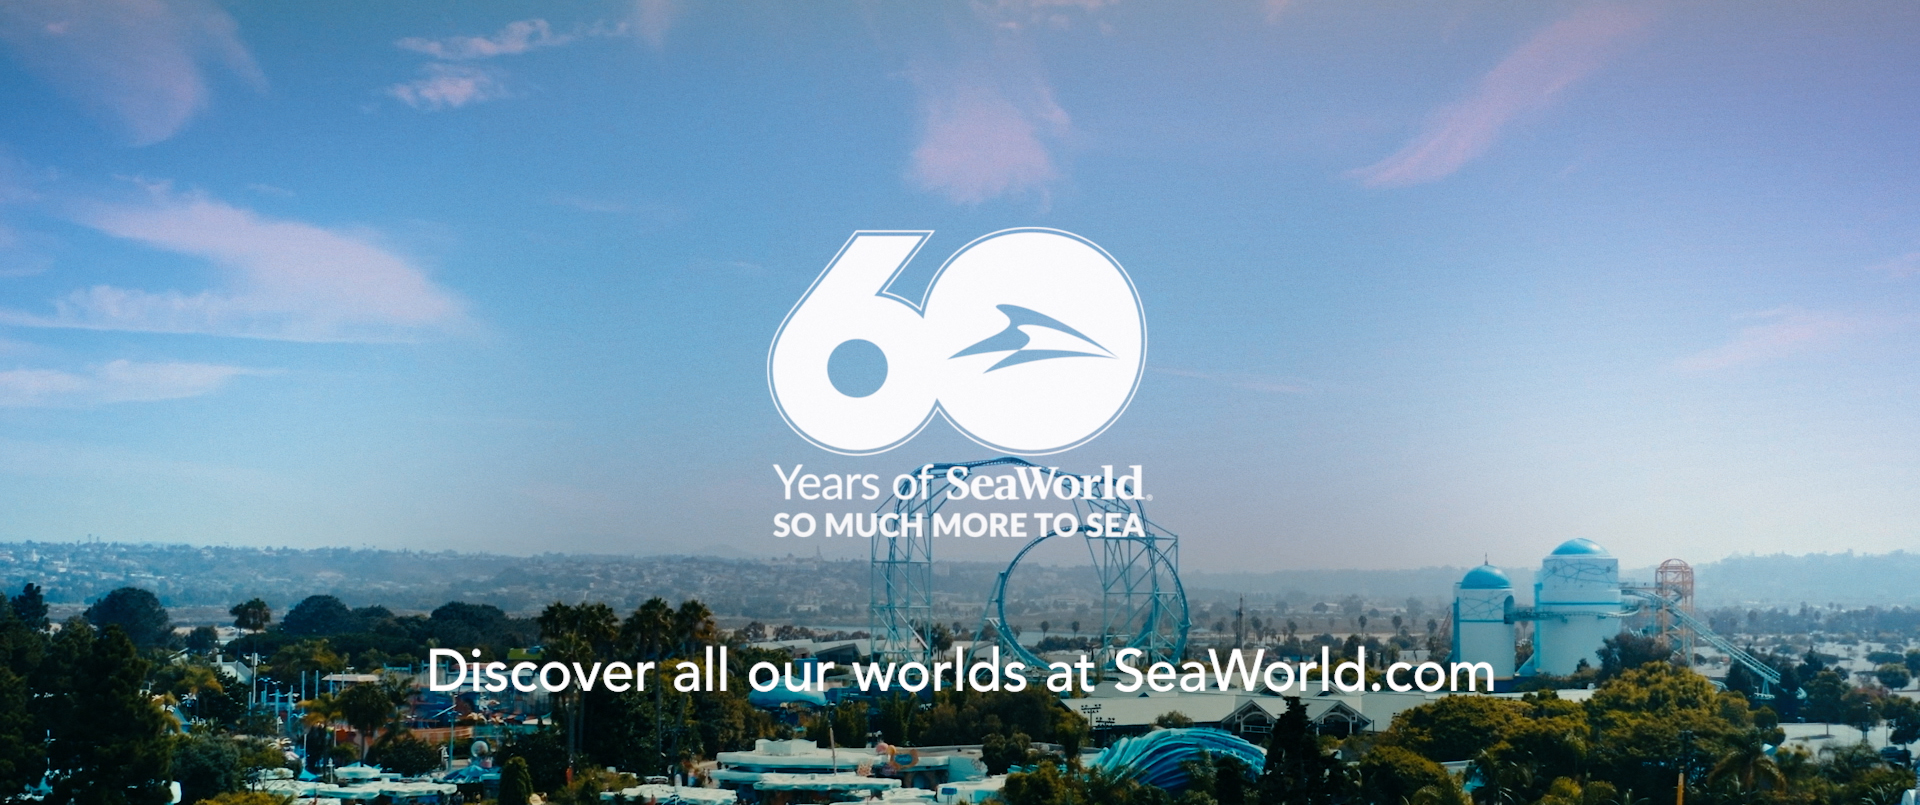 SeaWorld 60th Anniversqary